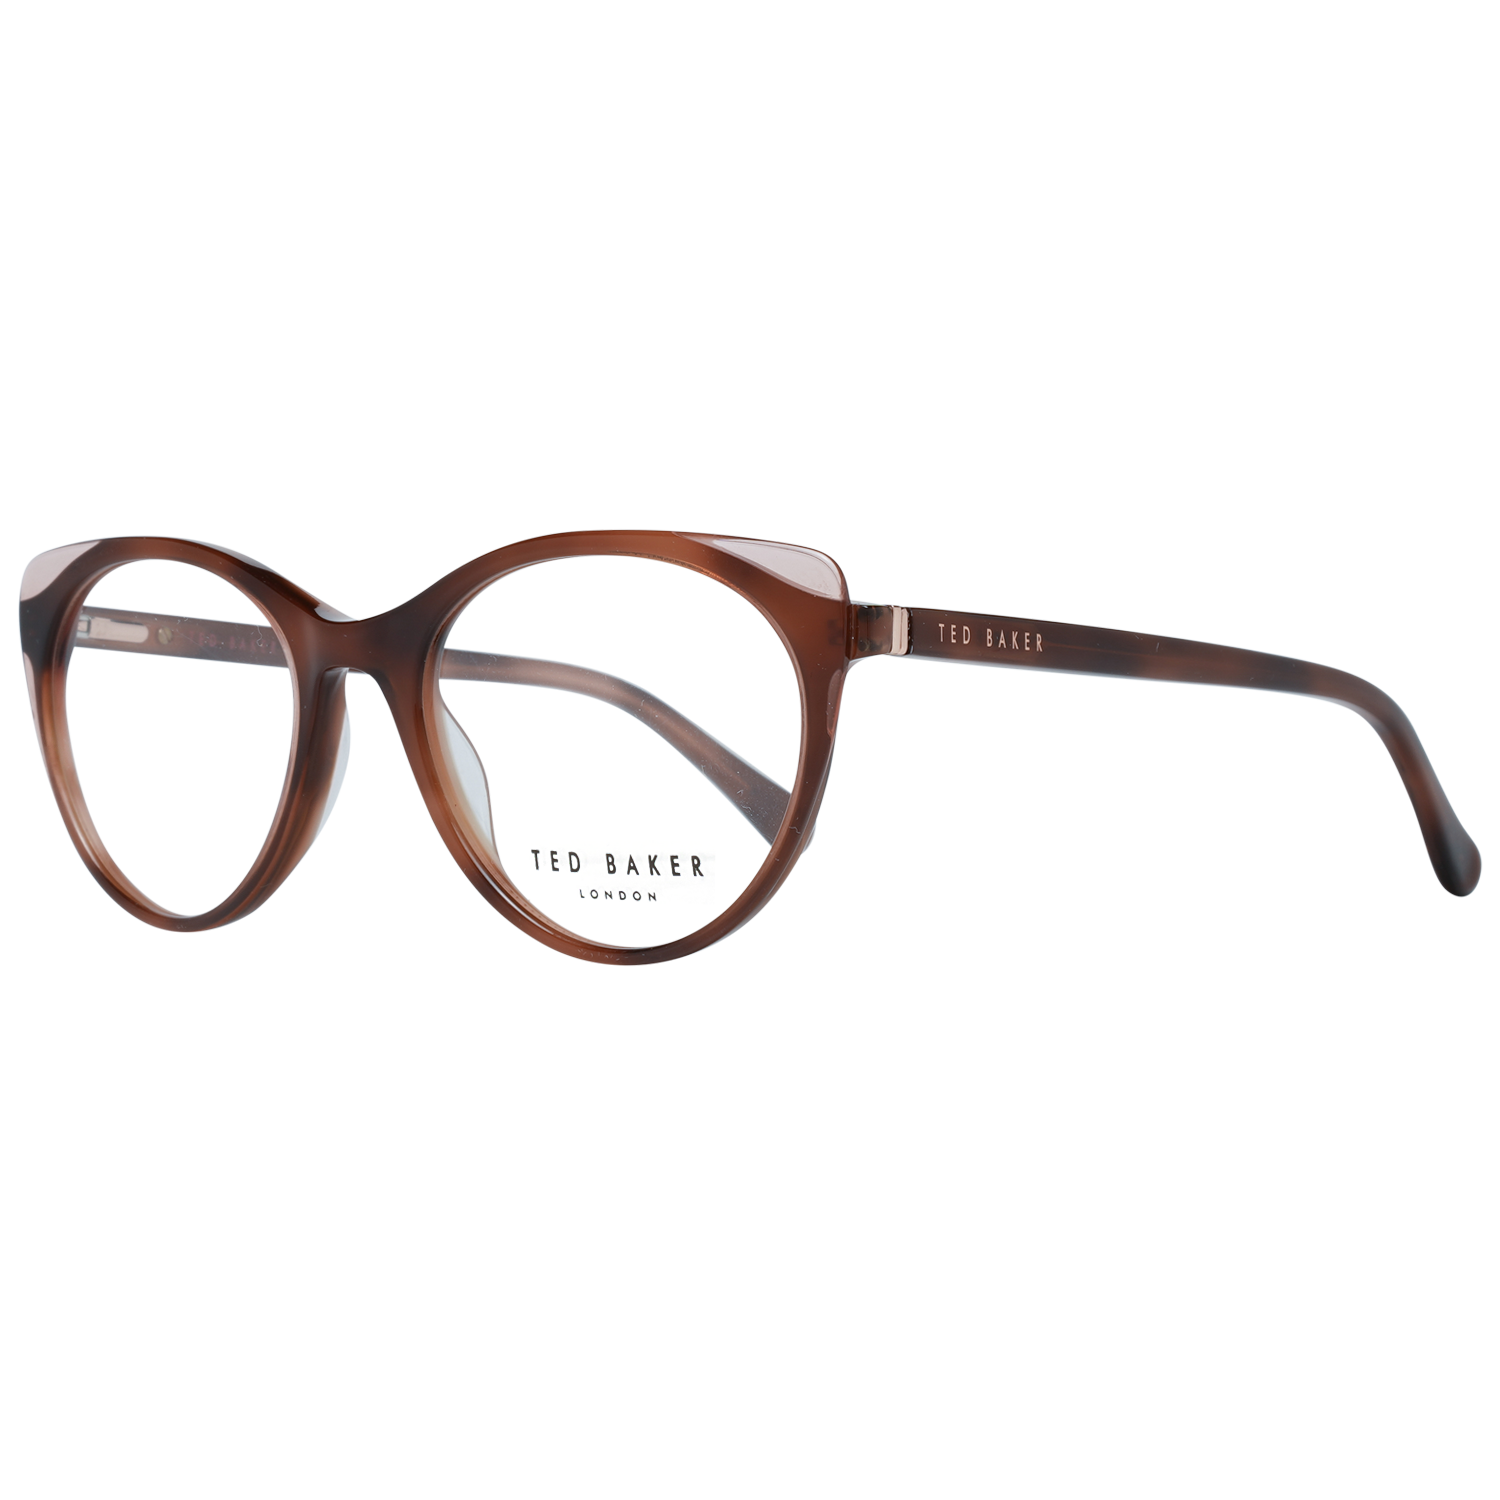 Ted Baker Frames Ted Baker Optical Frame TB9175 296 50 Saissa Eyeglasses Eyewear UK USA Australia 